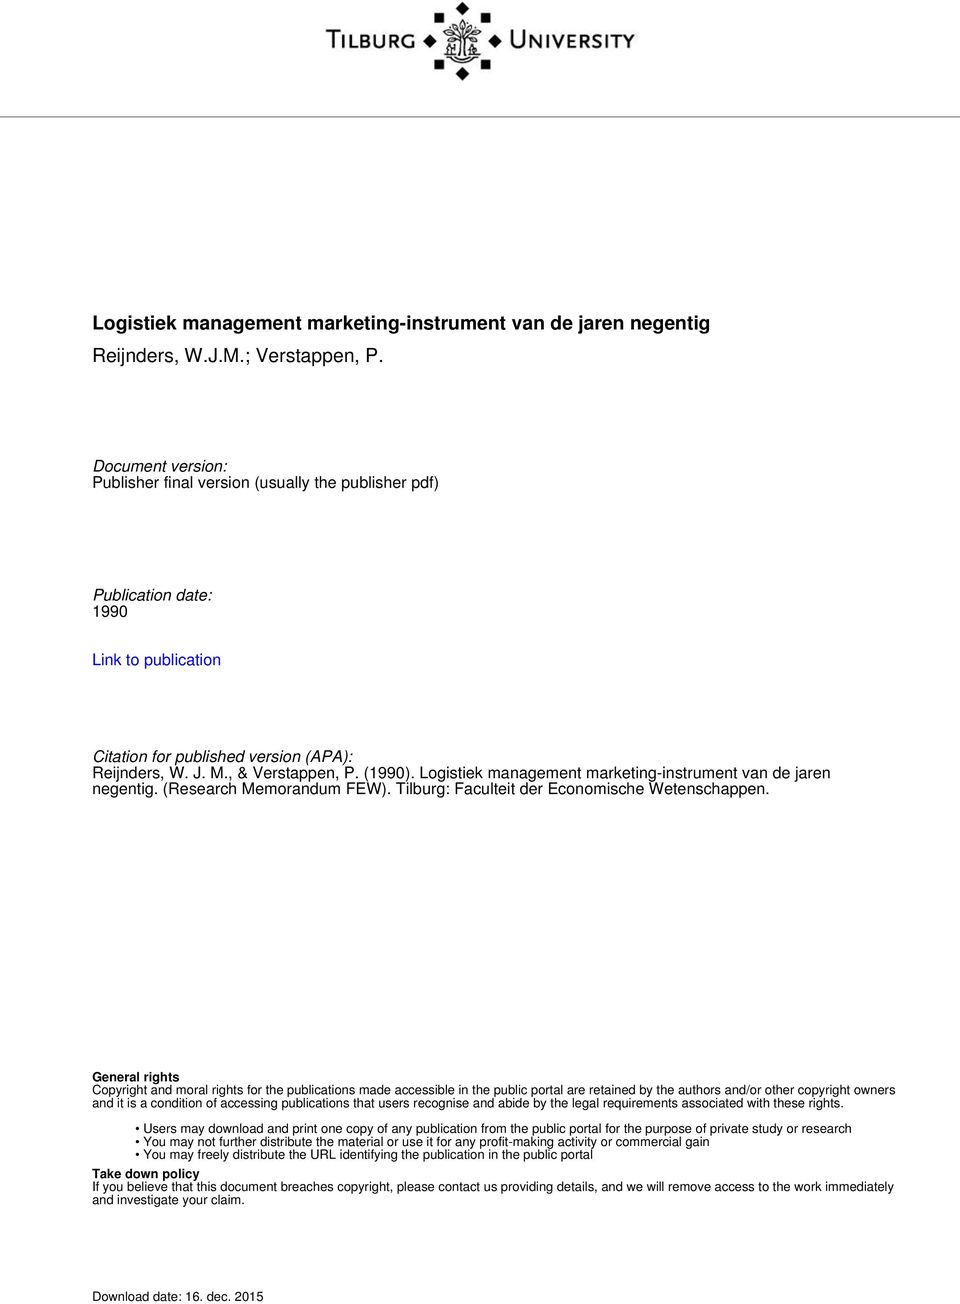 Logistiek management marketing-instrument van de jaren negentig. (Research Memorandum FEW). Tilburg: Faculteit der Economische Wetenschappen.